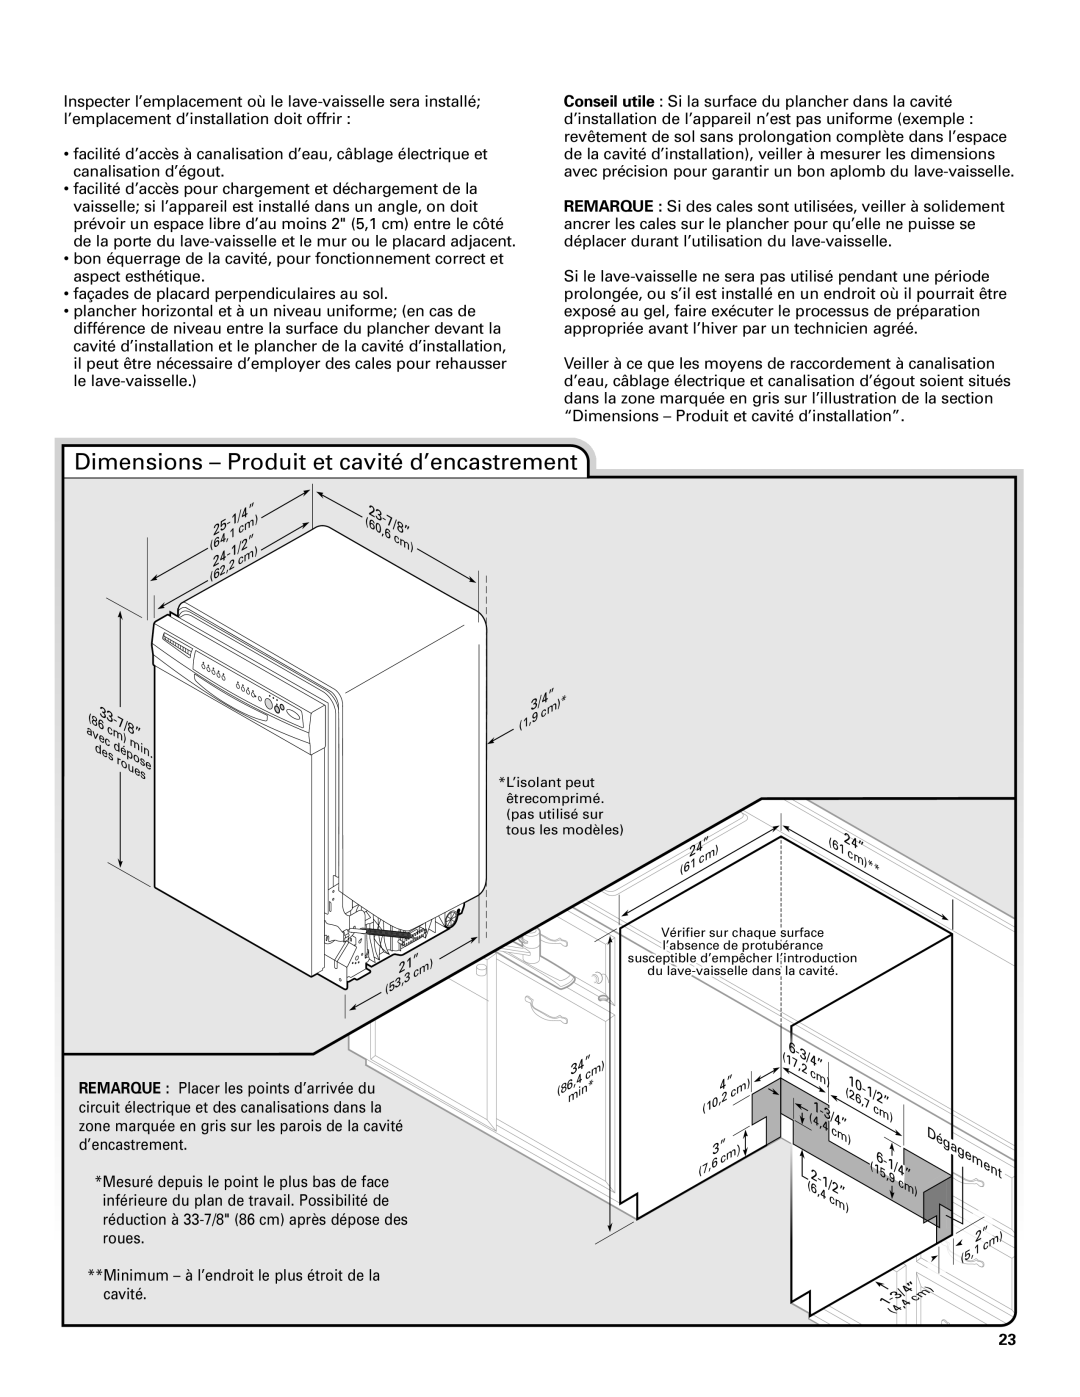 Whirlpool TUD8700SQ installation instructions Dimensions - Produit et cavité d’encastrement, 60,6 7/8” 